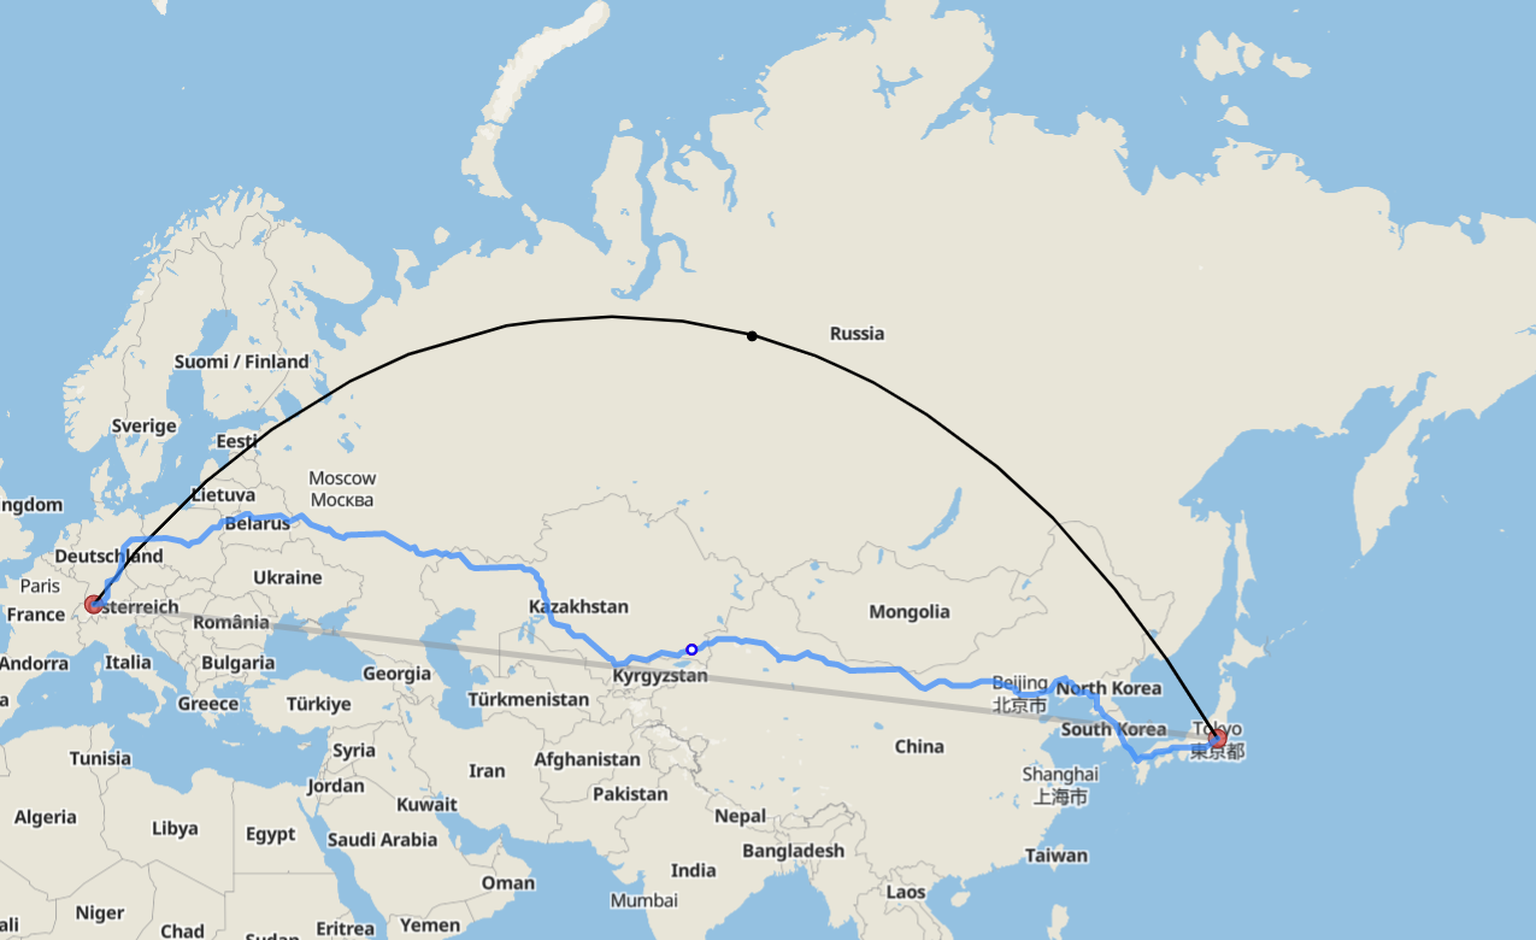 Die kürzeste Route von Zürich nach Tokio führt über Russland. Luftlinie: Rund 9500 Kilometer.